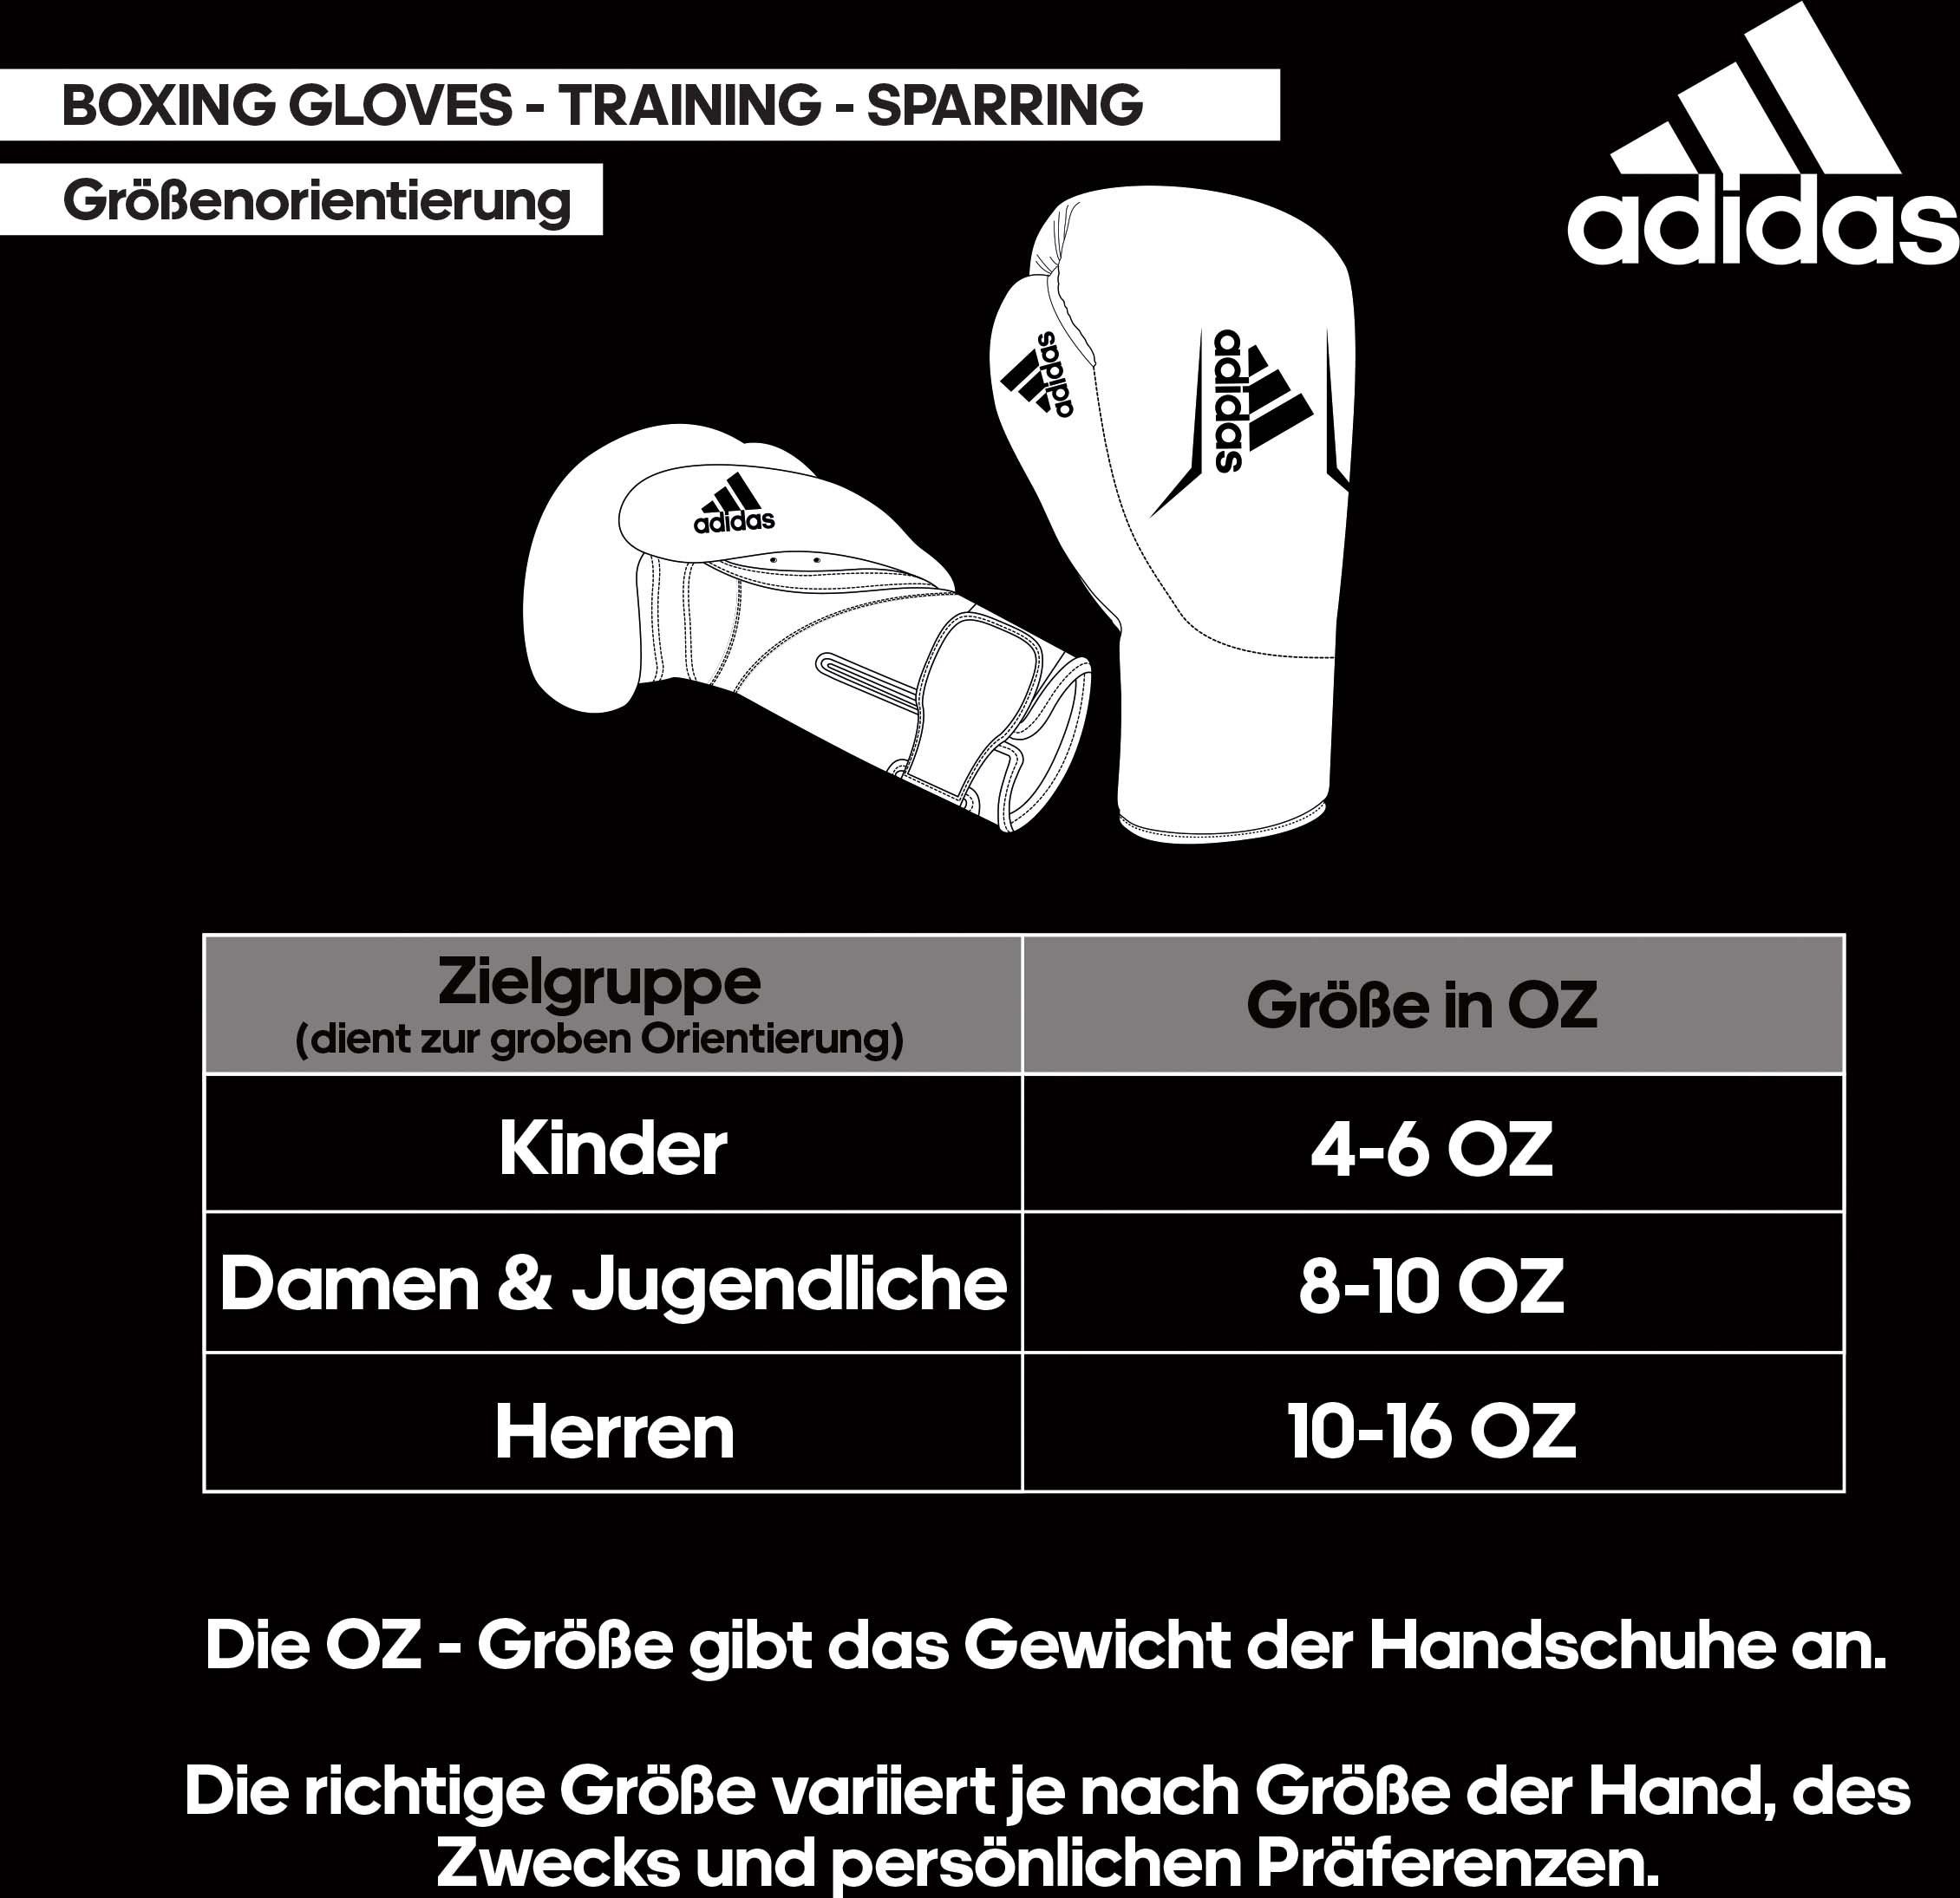 100 Performance Boxhandschuhe adidas Speed schwarz/weiß